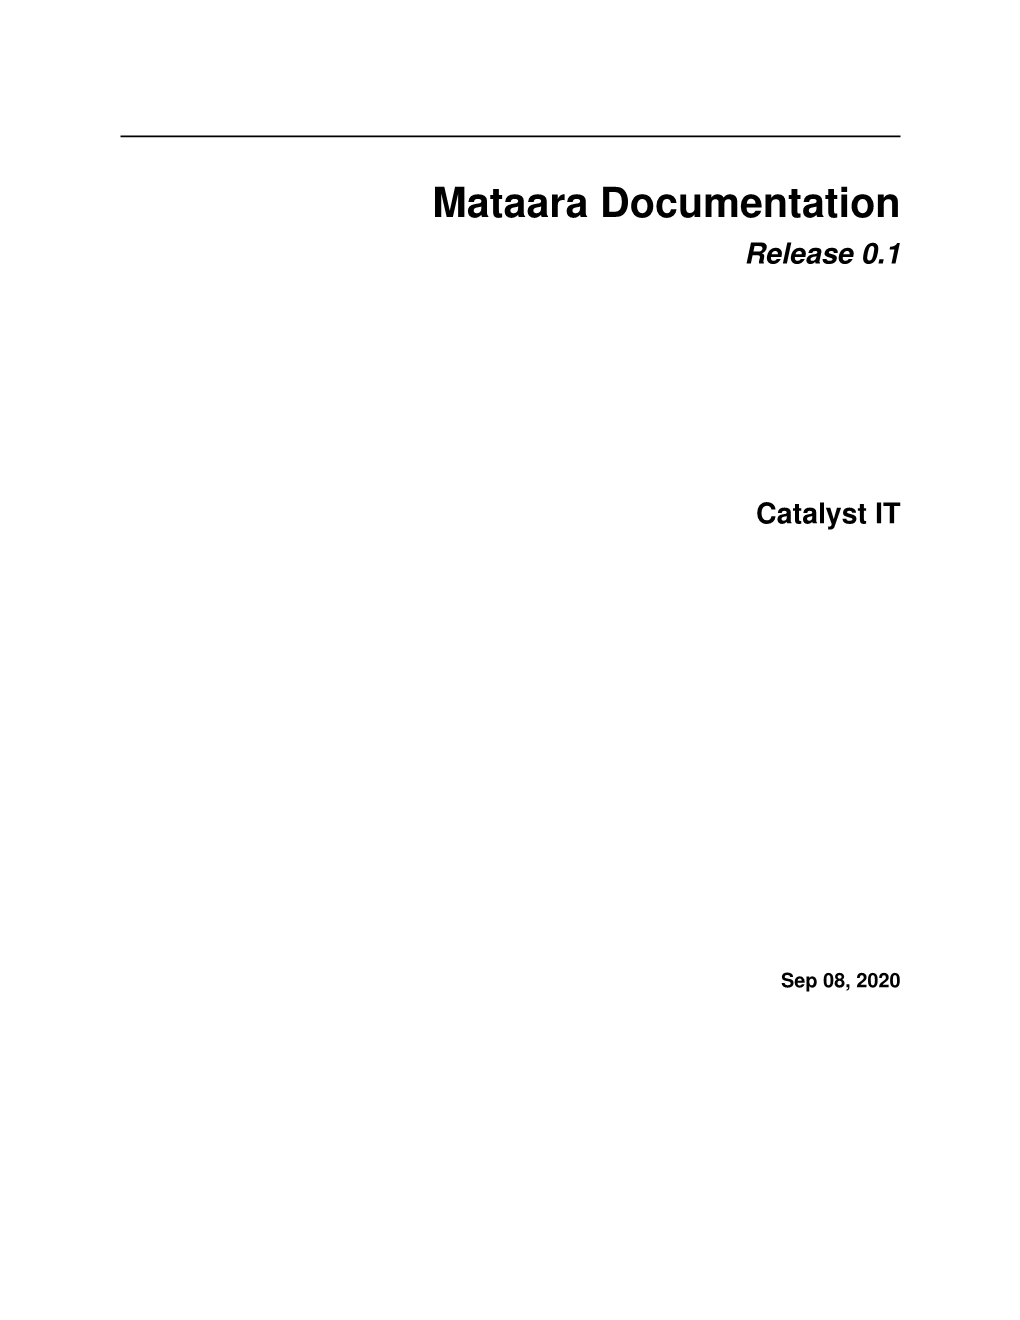 Mataara Documentation Release 0.1